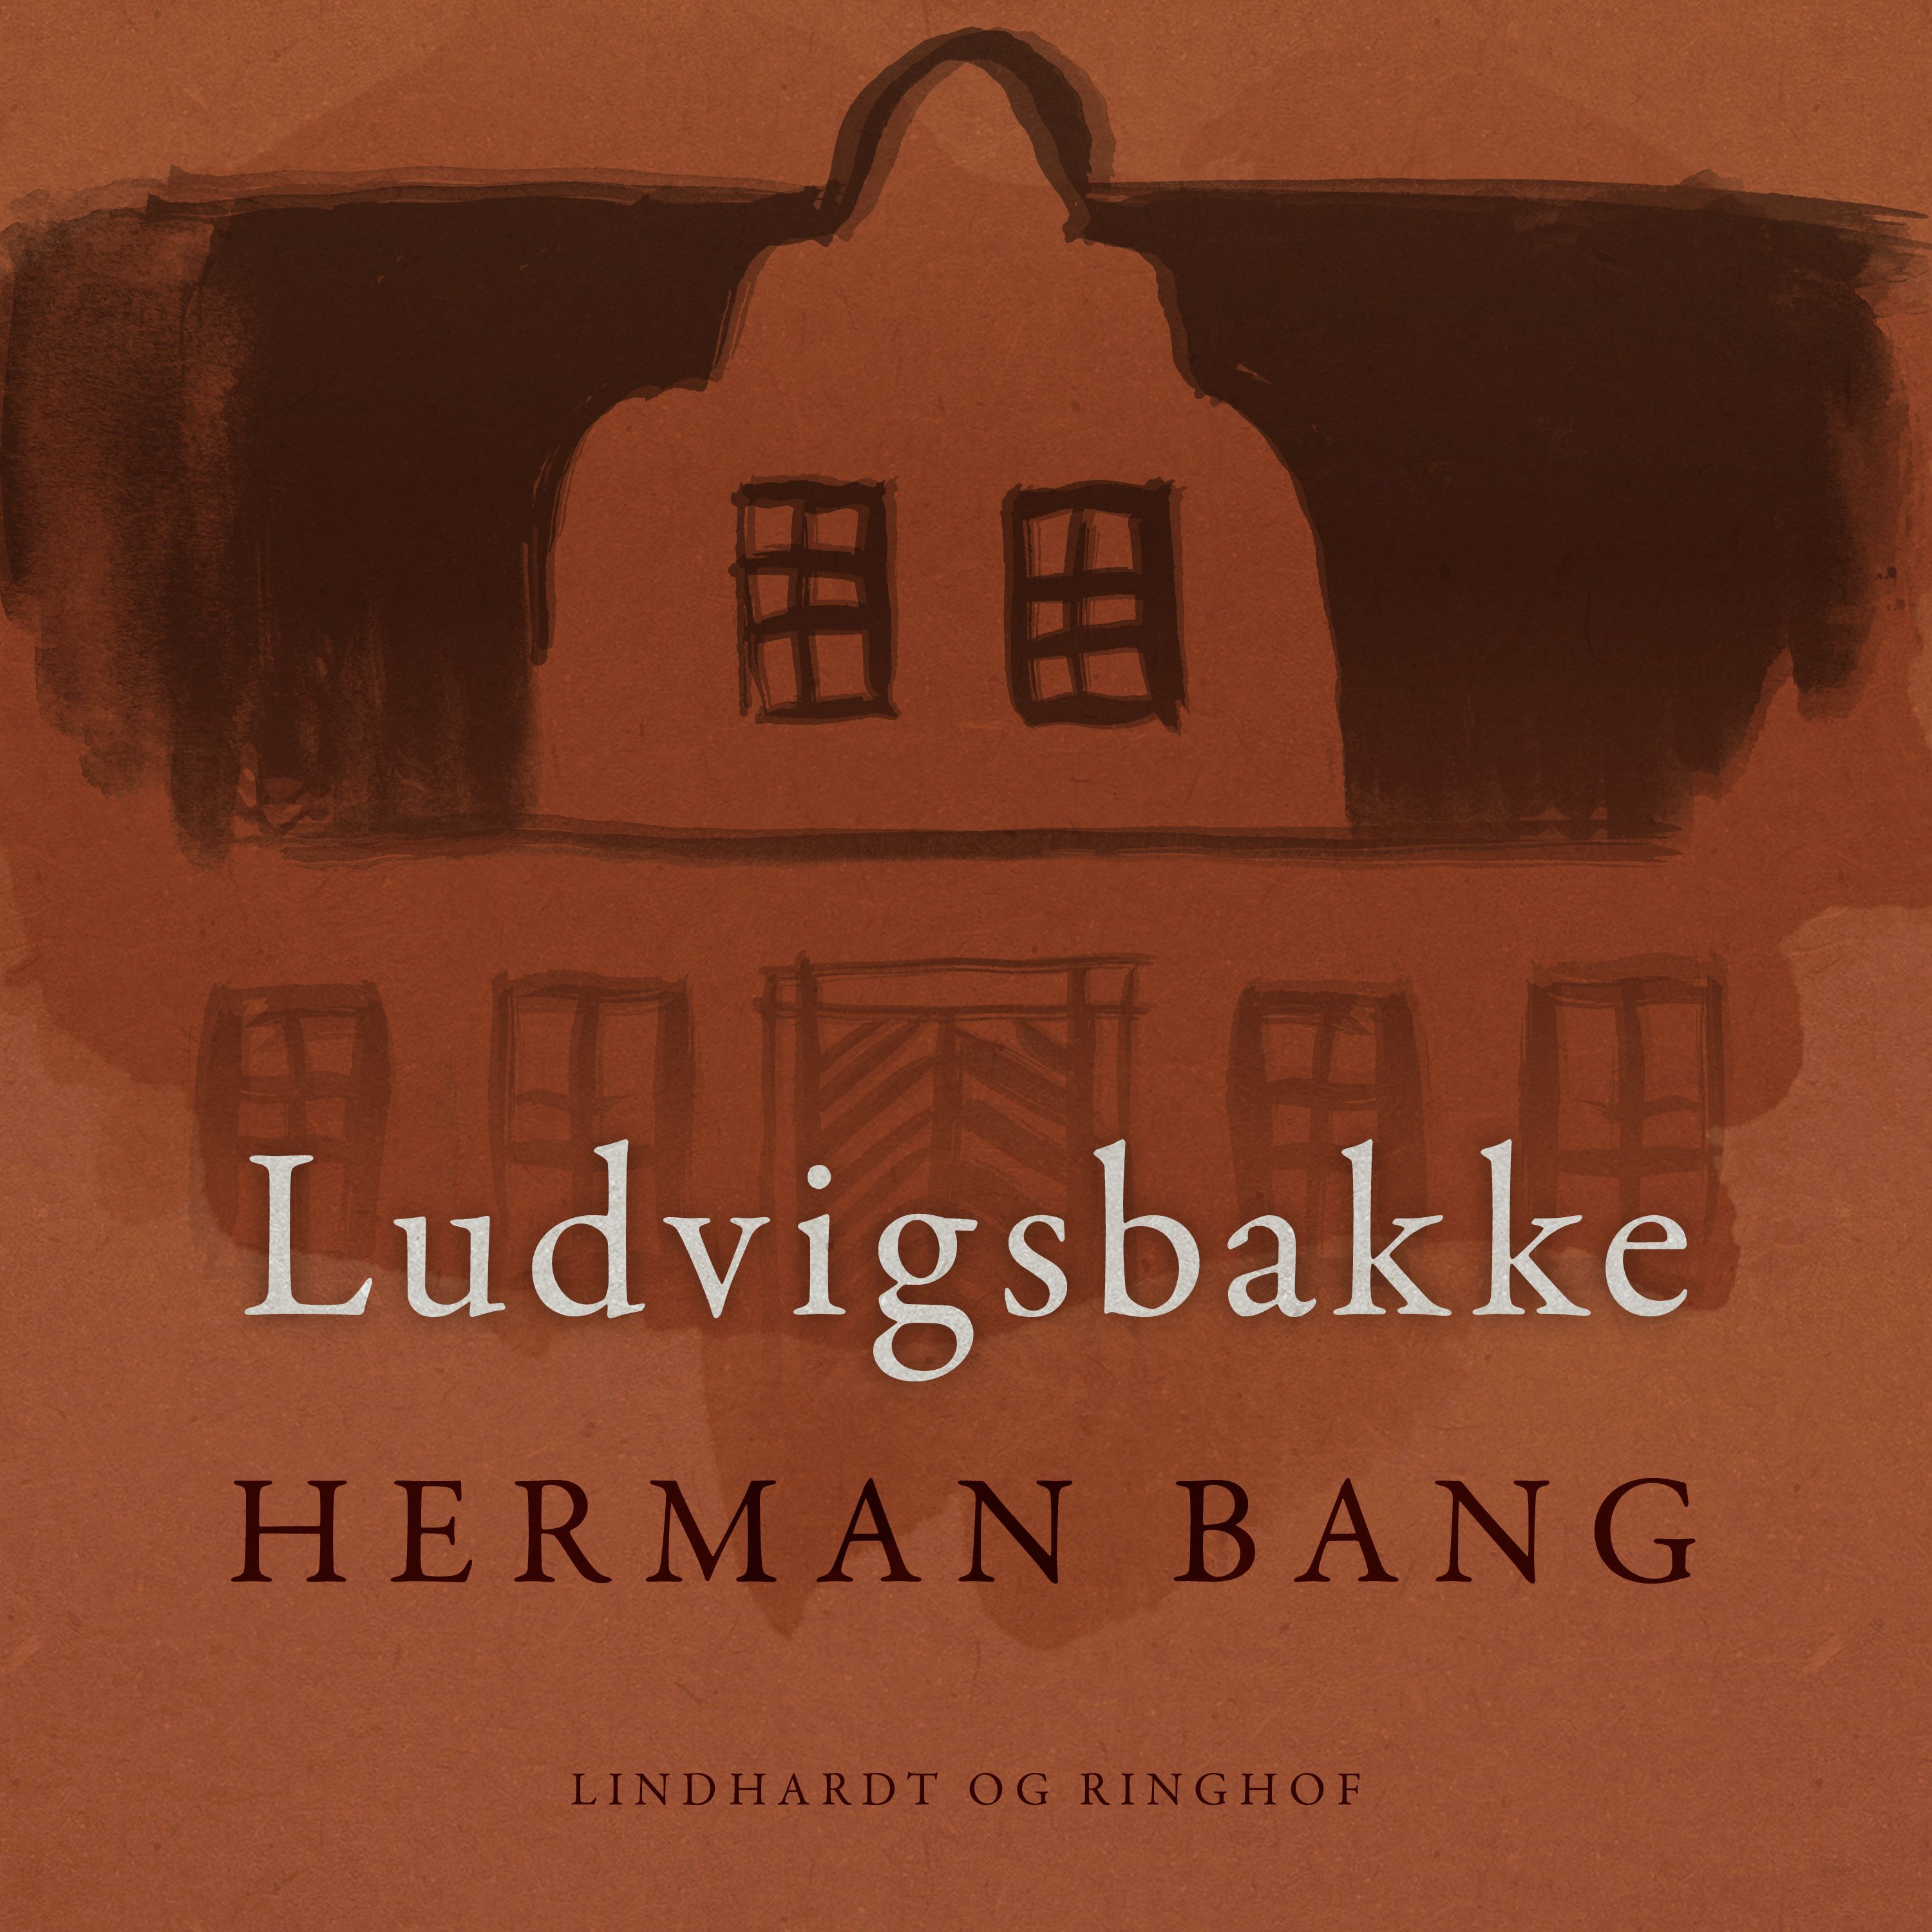 Ludvigsbakke, lydbog af Herman Bang